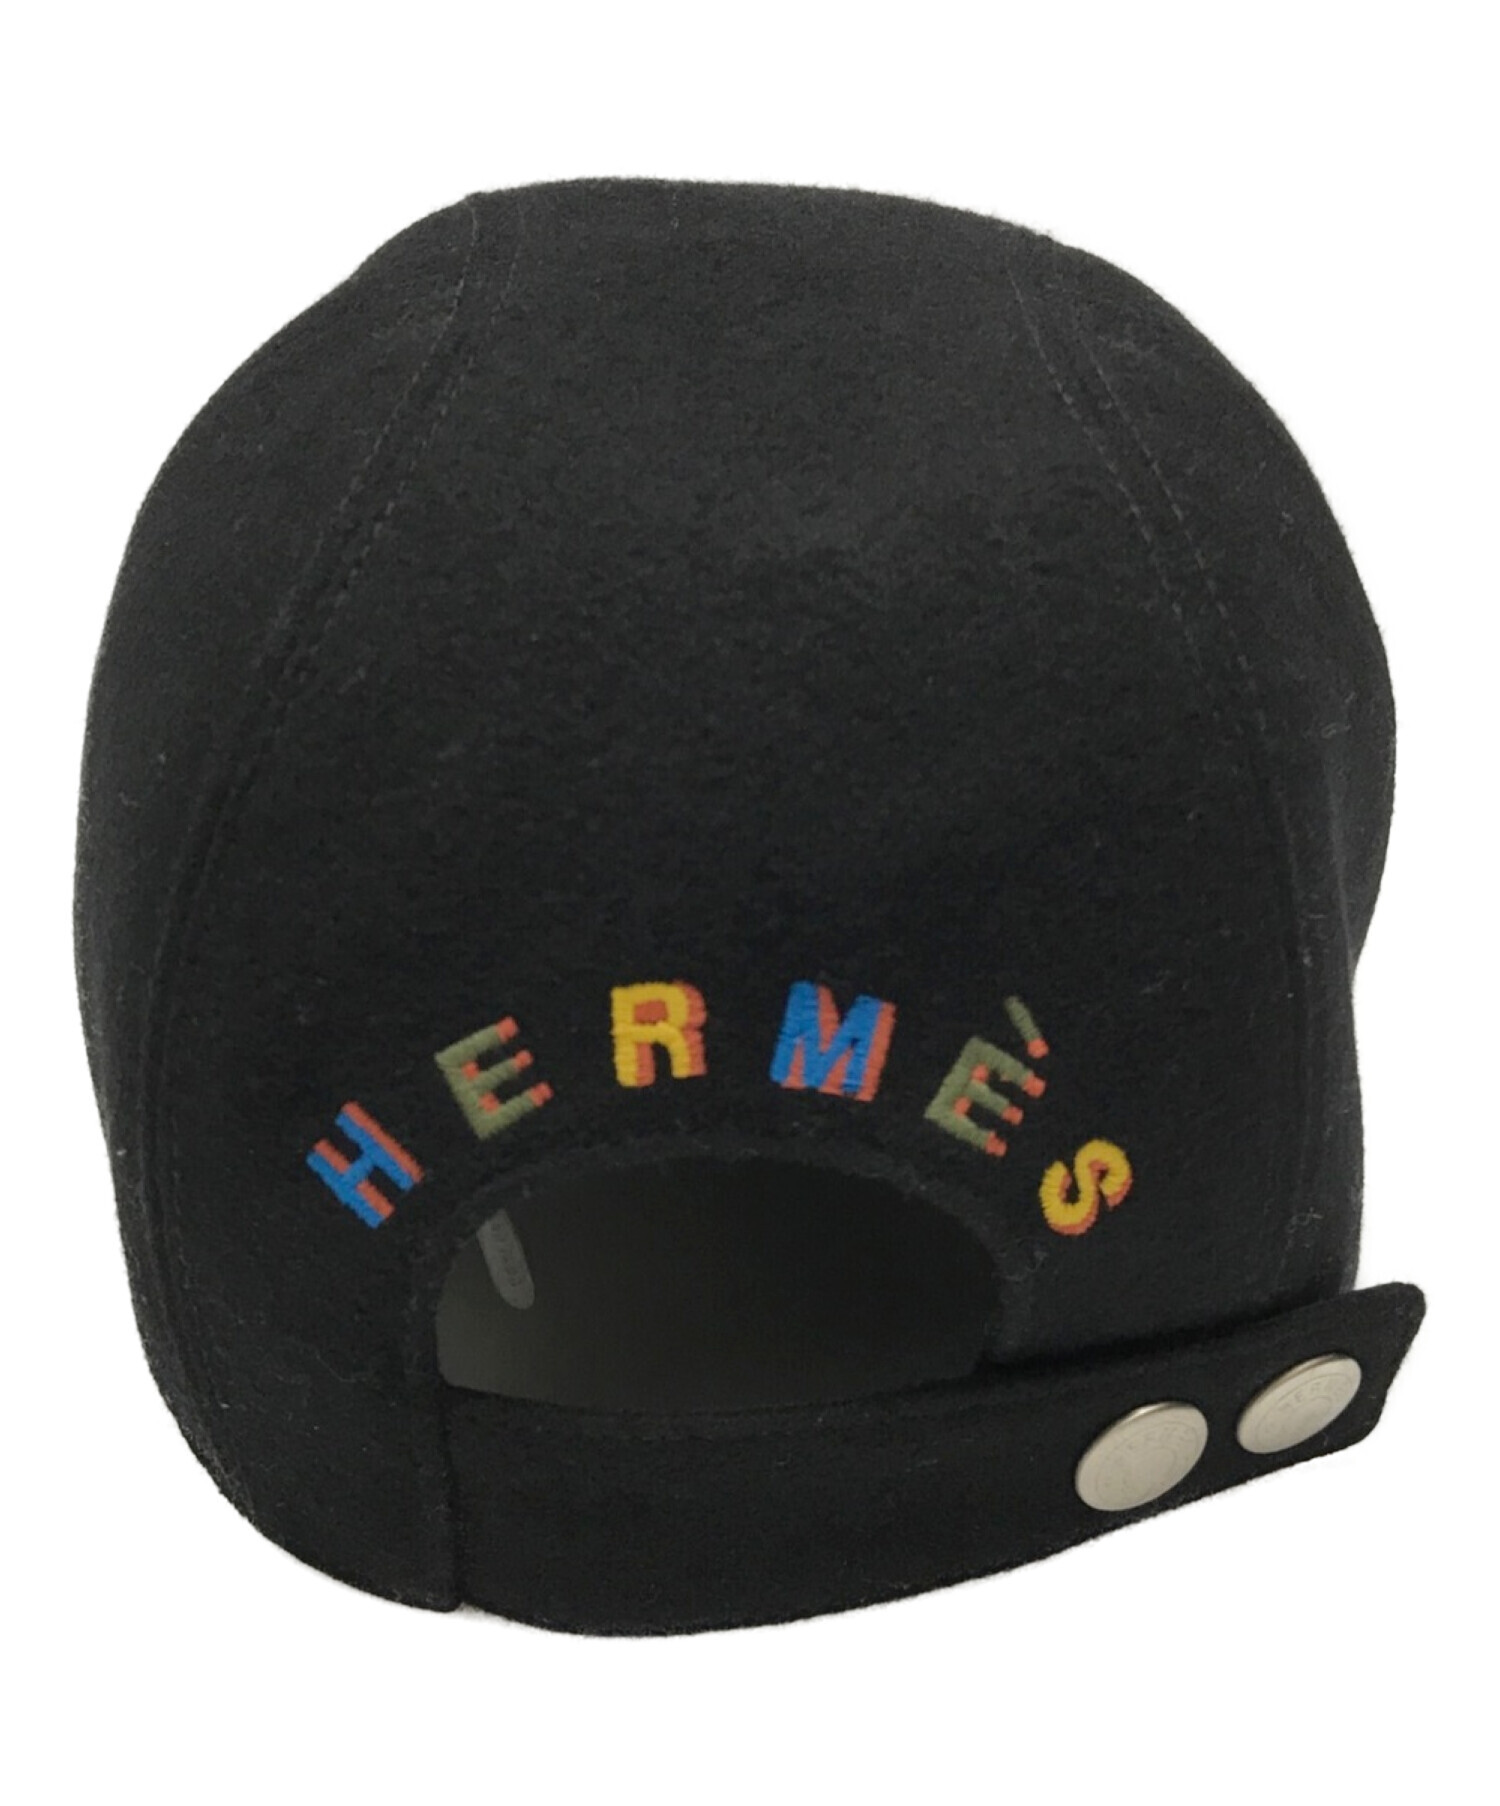 特価ブランド キャスケット 帽子 エルメスキャップ57Hロゴ 帽子